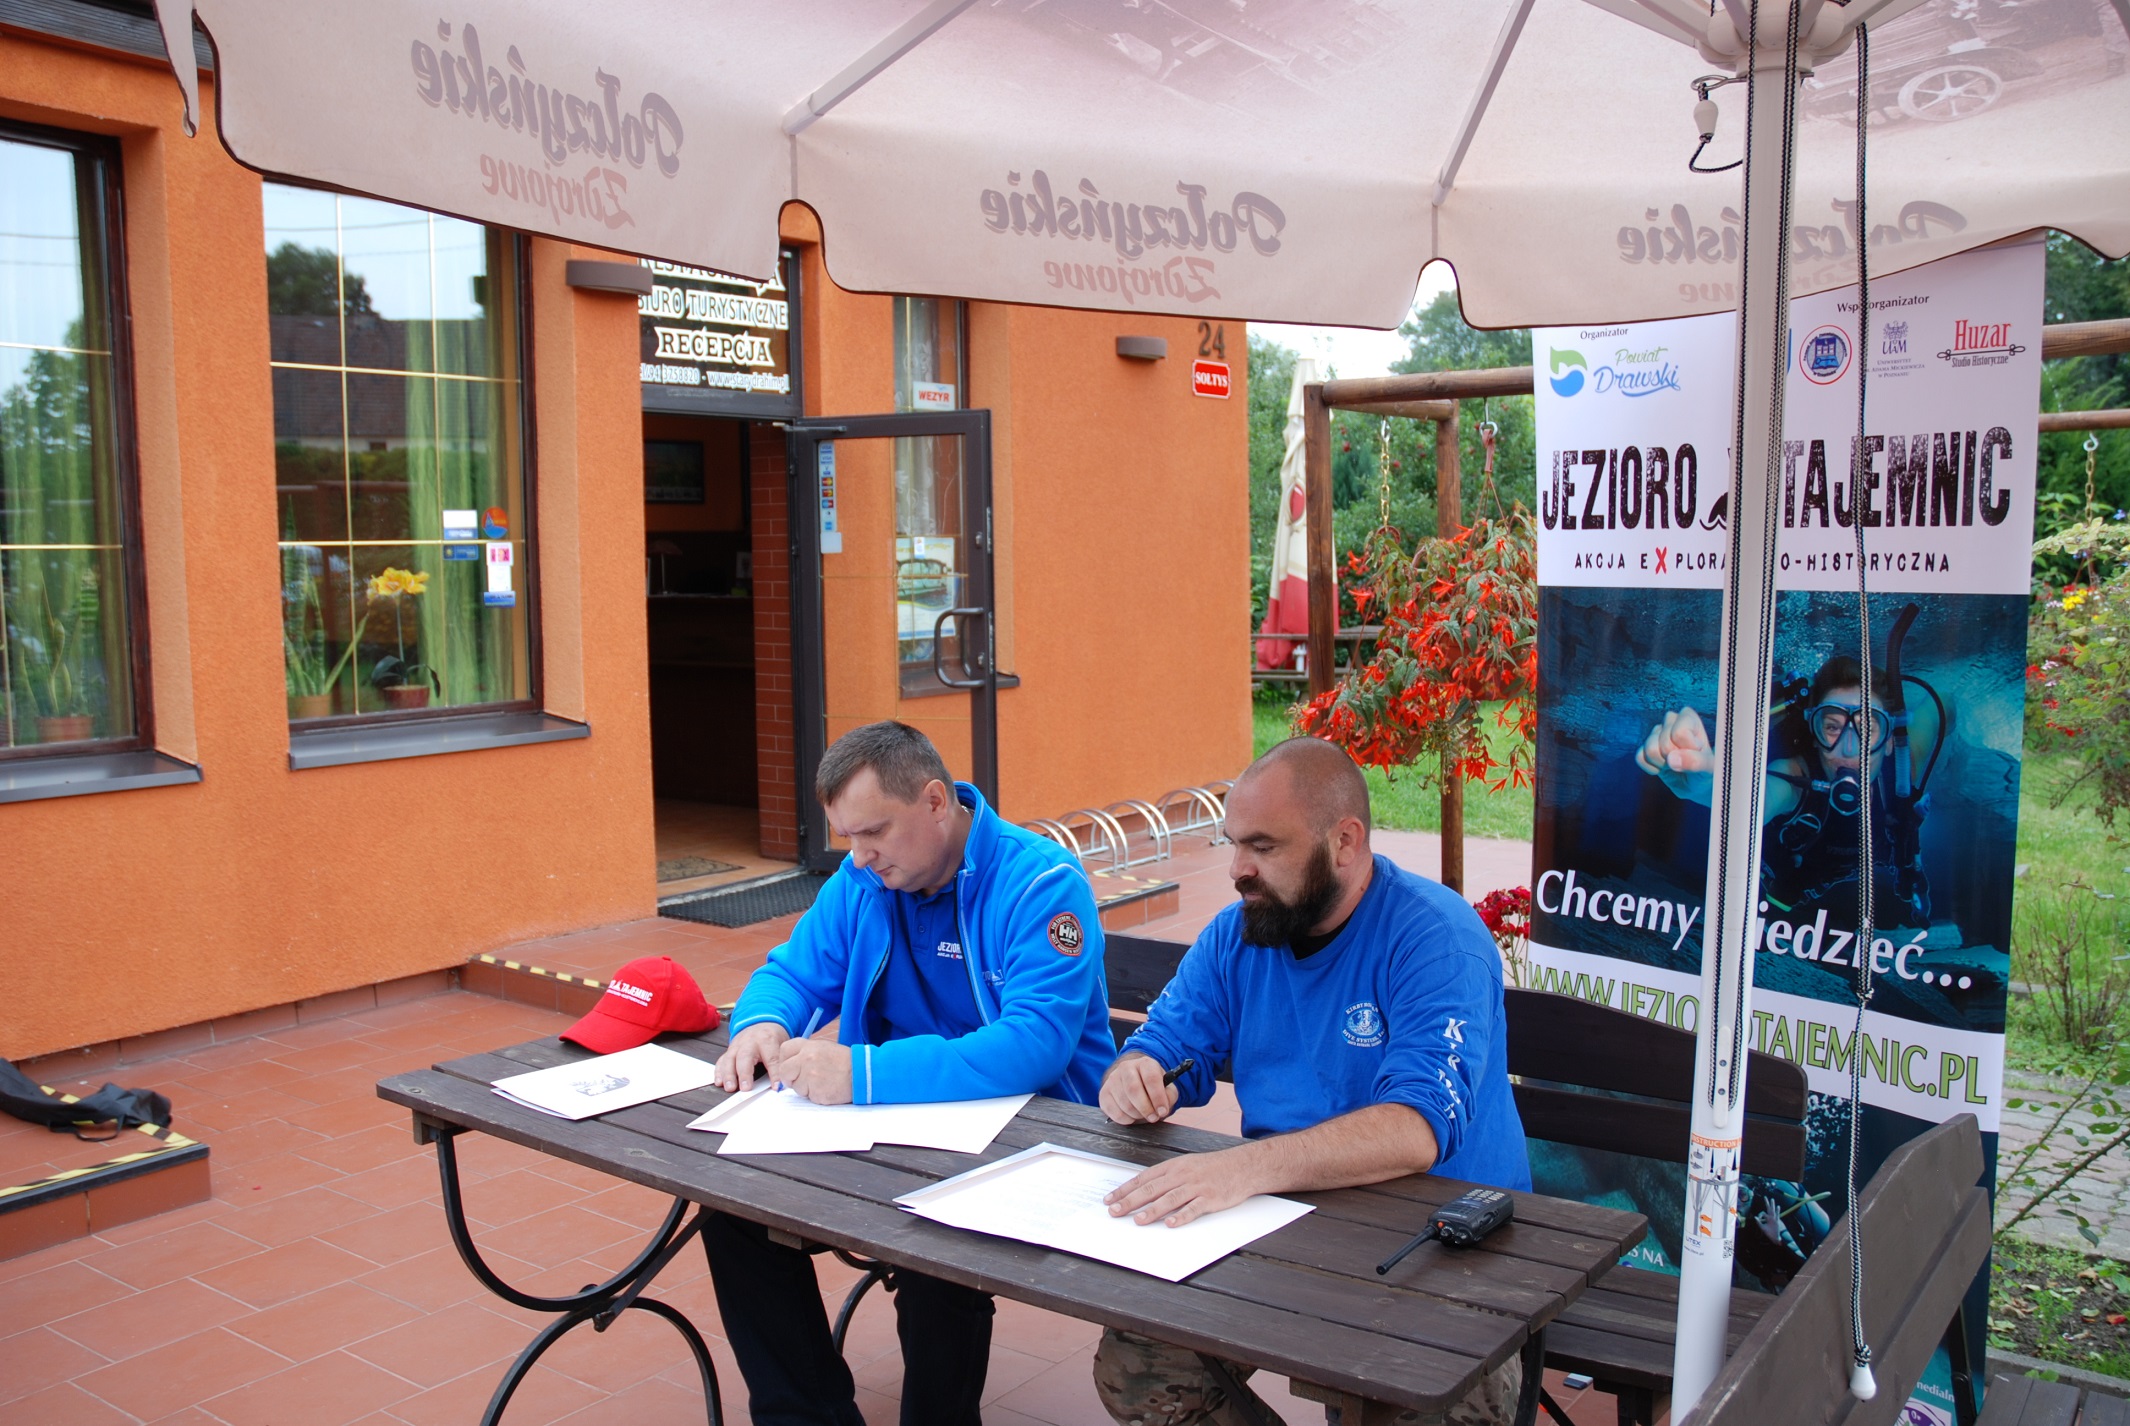 Podpisanie deklaracji sponsorskiej przed restauracją Stary Drahim